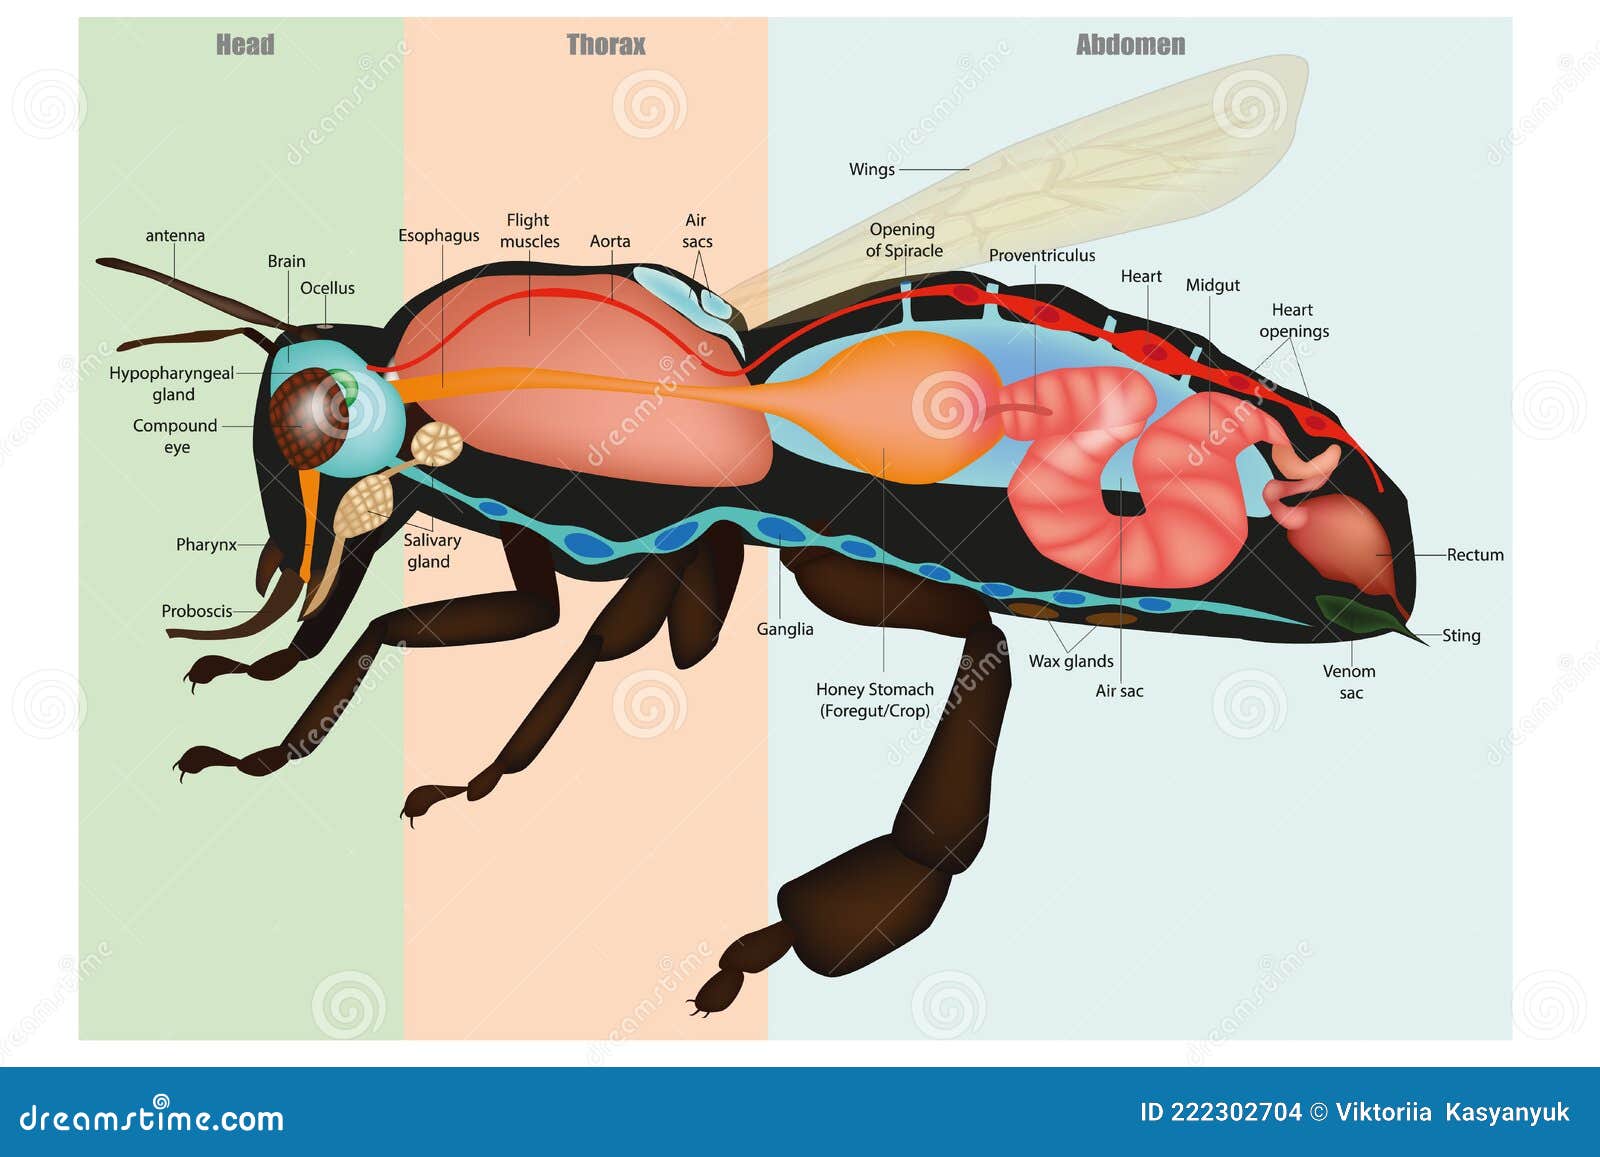 La anatomía de las abejas melíferas